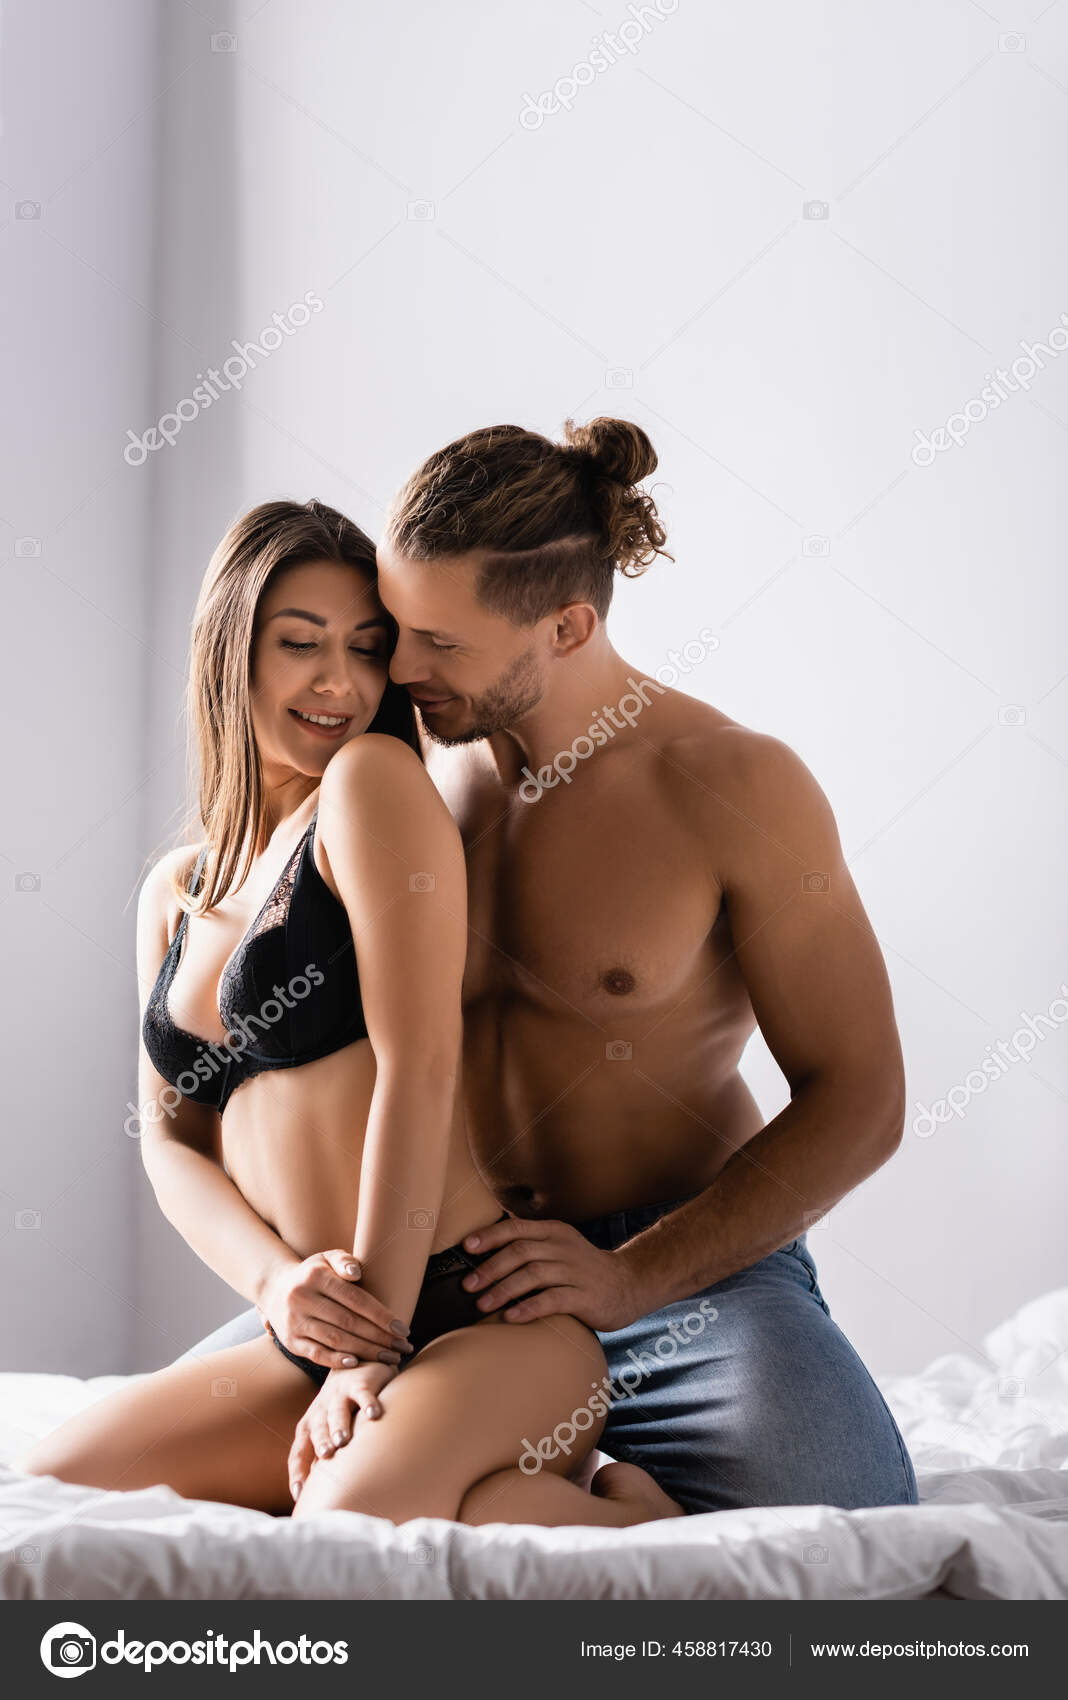 Girlfriend Underwear Pics